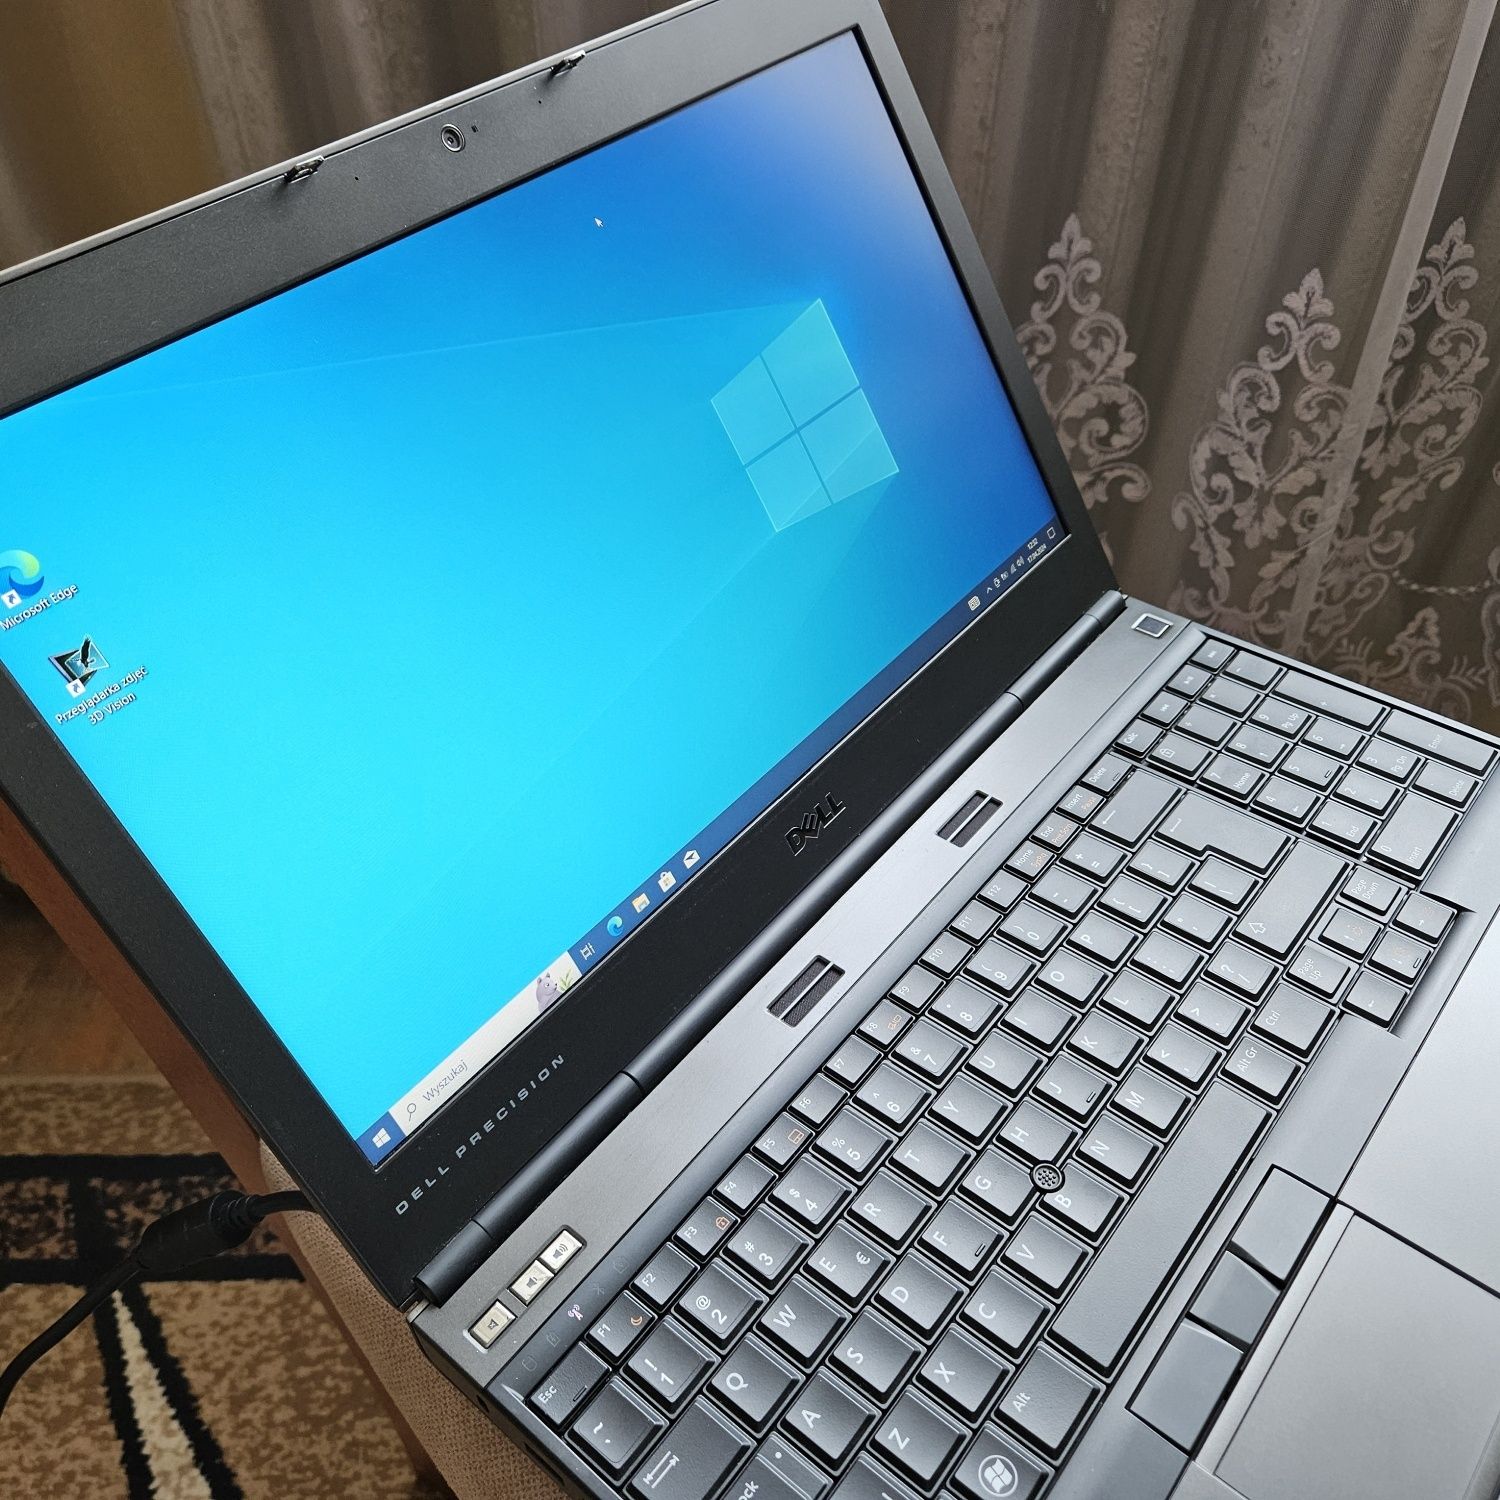 Laptop Dell Precision M4600